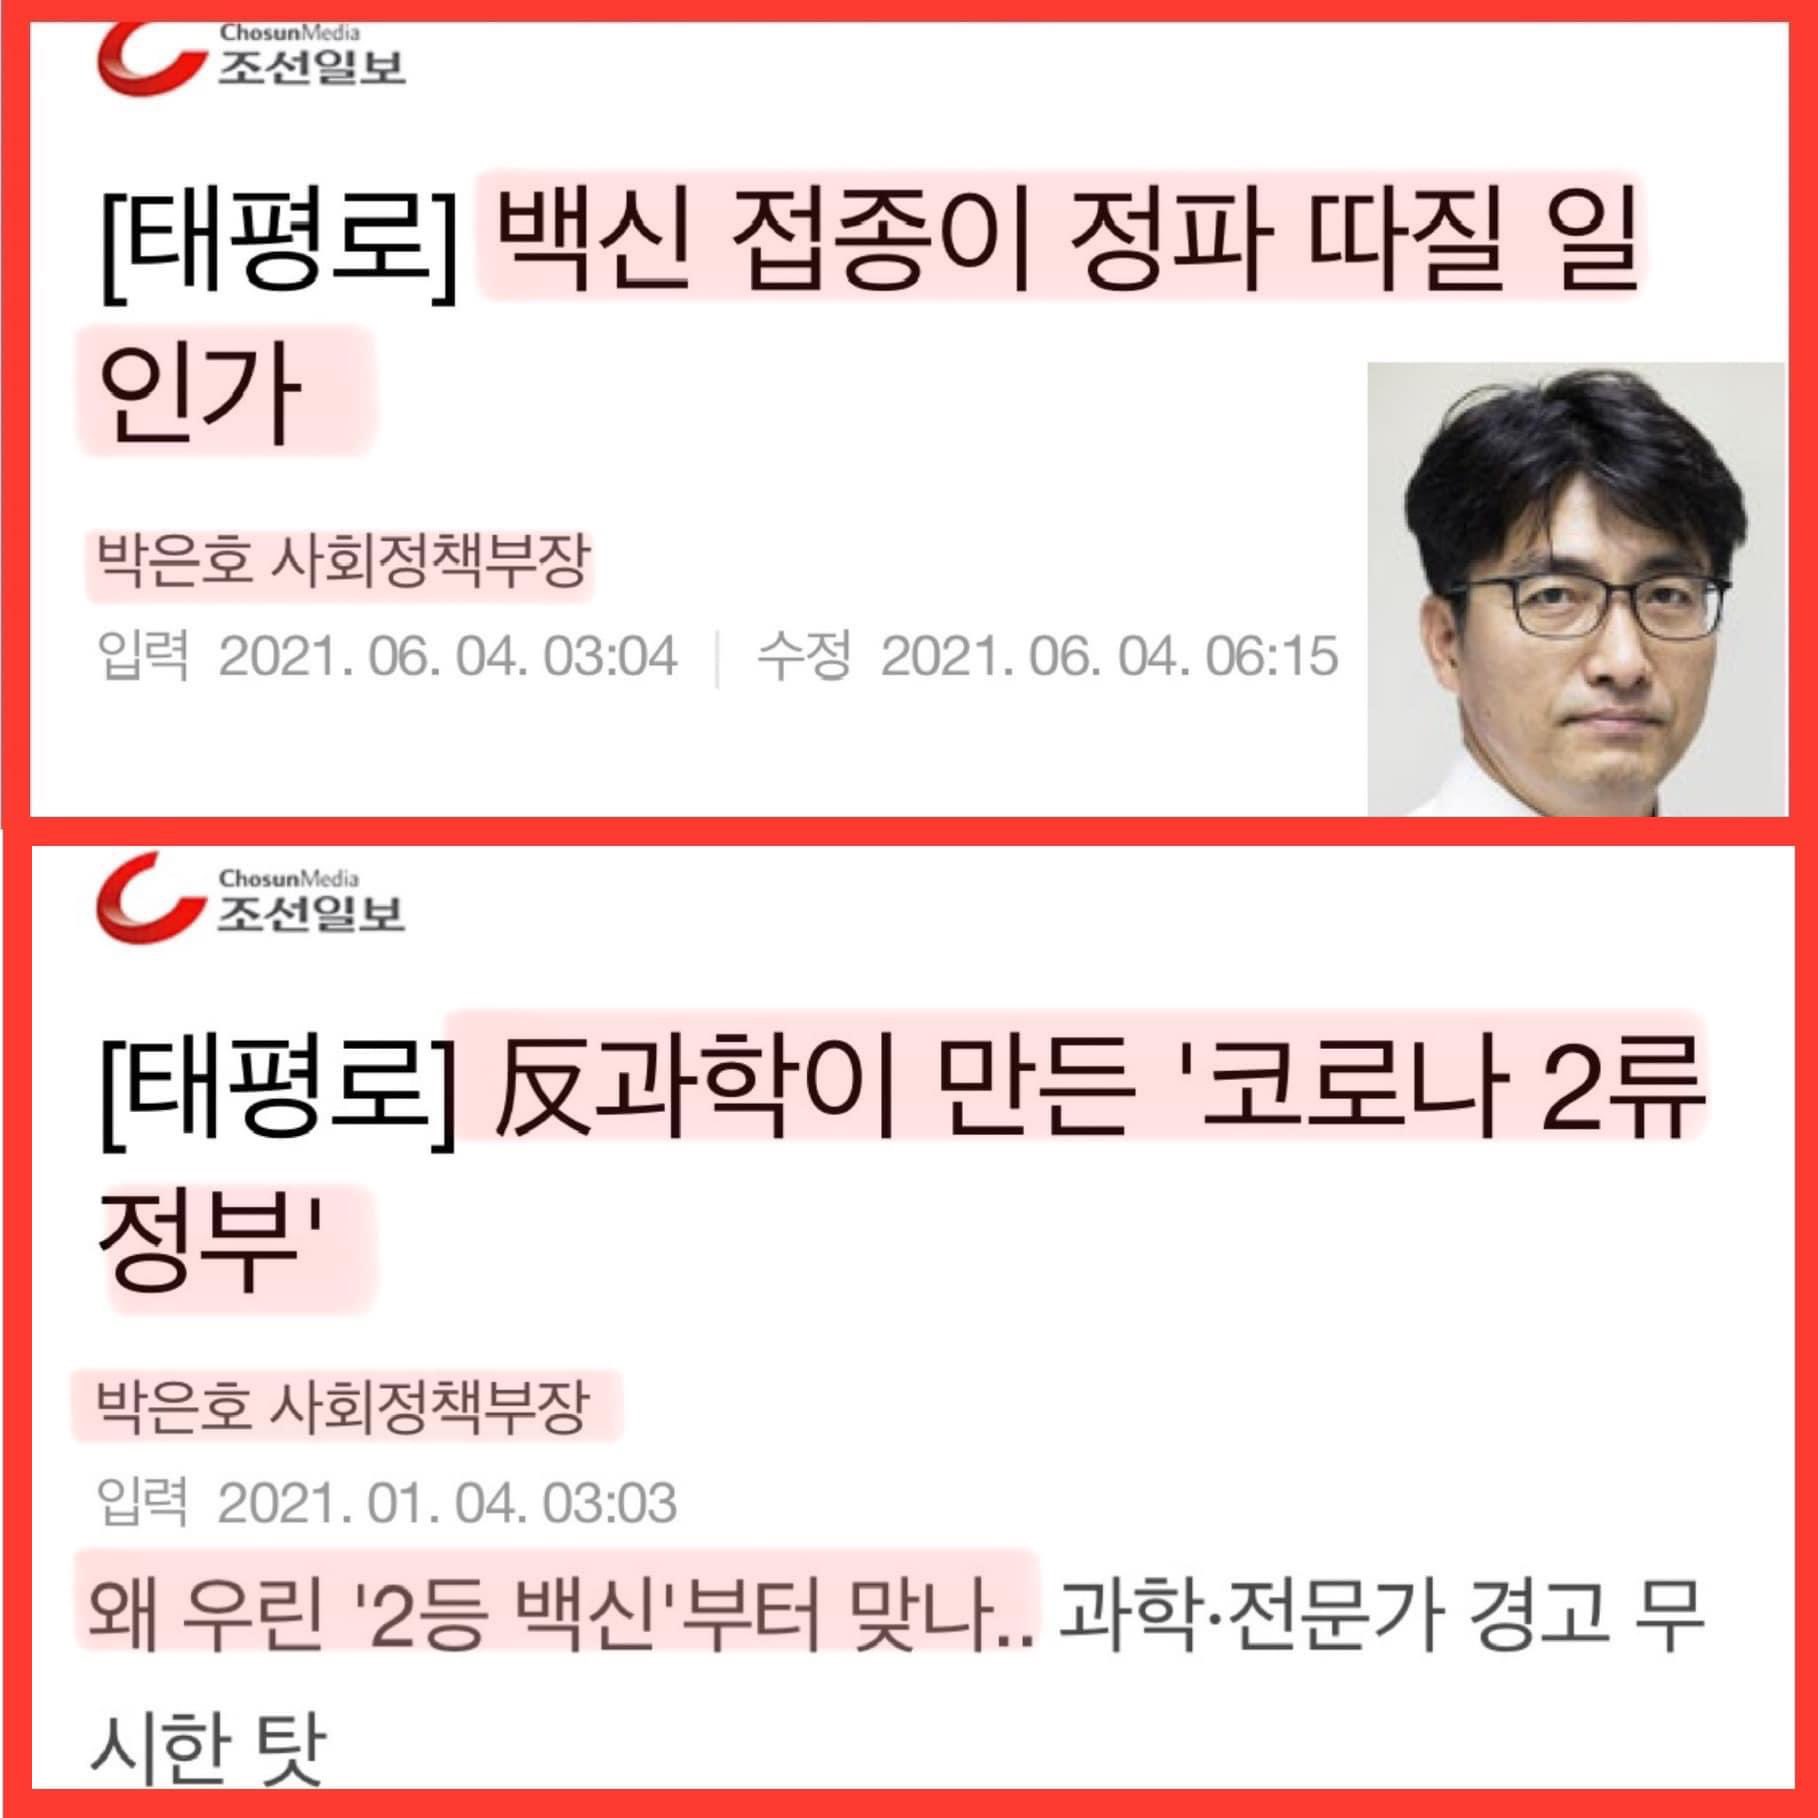 조선일보 사회 정책부장 기사의 병신 아니 변신